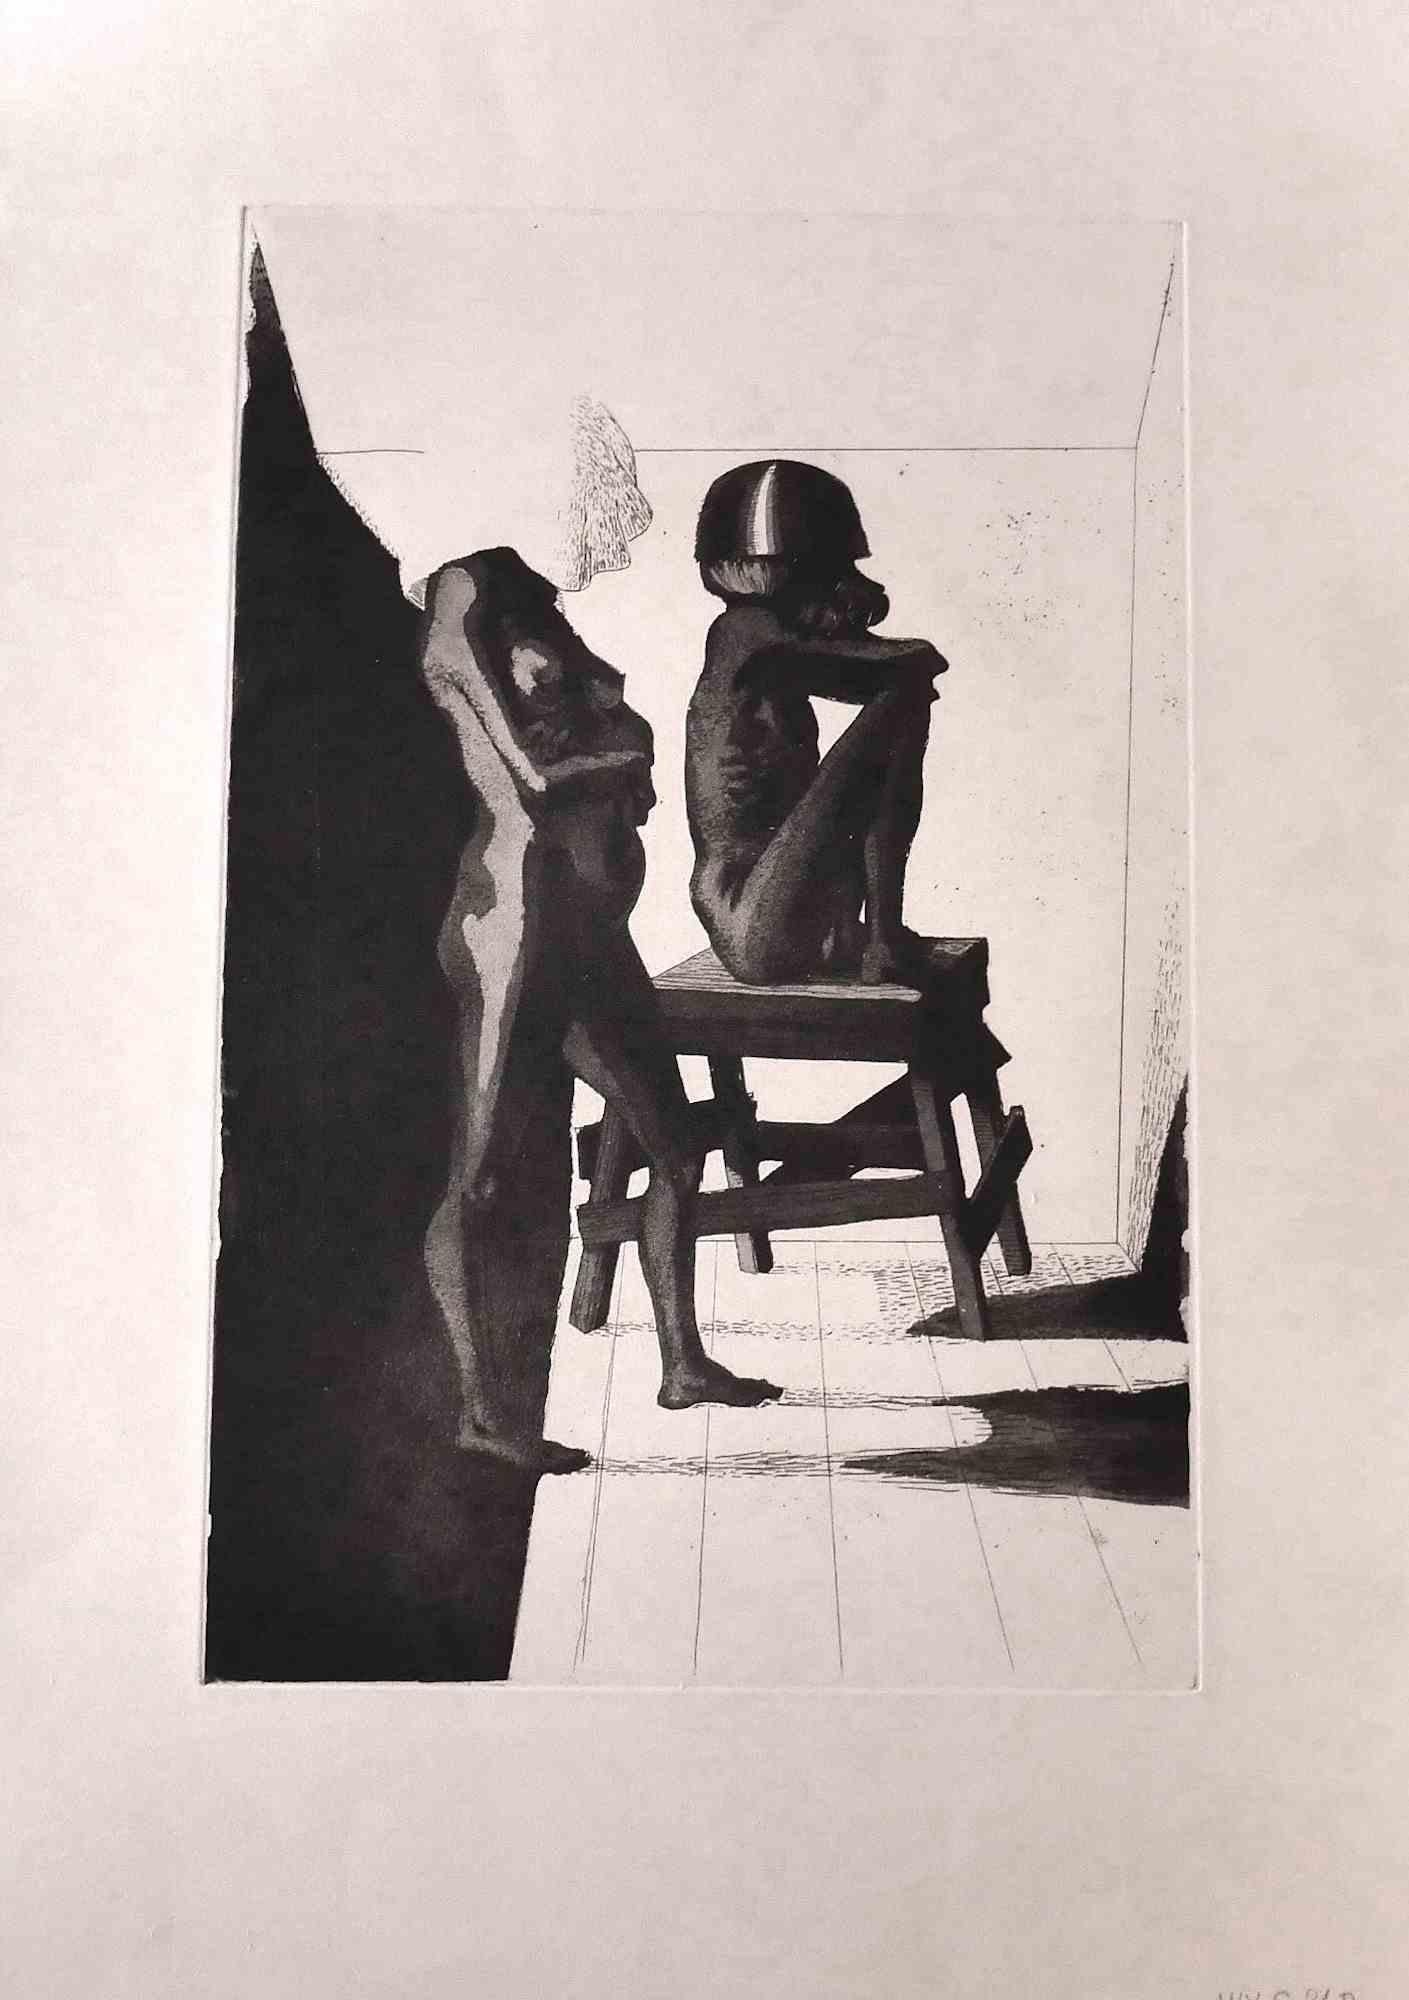 Silence ist eine Original-Radierung von Leo Guida aus den 1970er Jahren.

Gute Bedingungen.

Das Kunstwerk wird mit kräftigen Strichen in einer ausgewogenen Komposition dargestellt.

Leo Guida  (1992 - 2017). Mit seinem Gespür für aktuelle Themen,